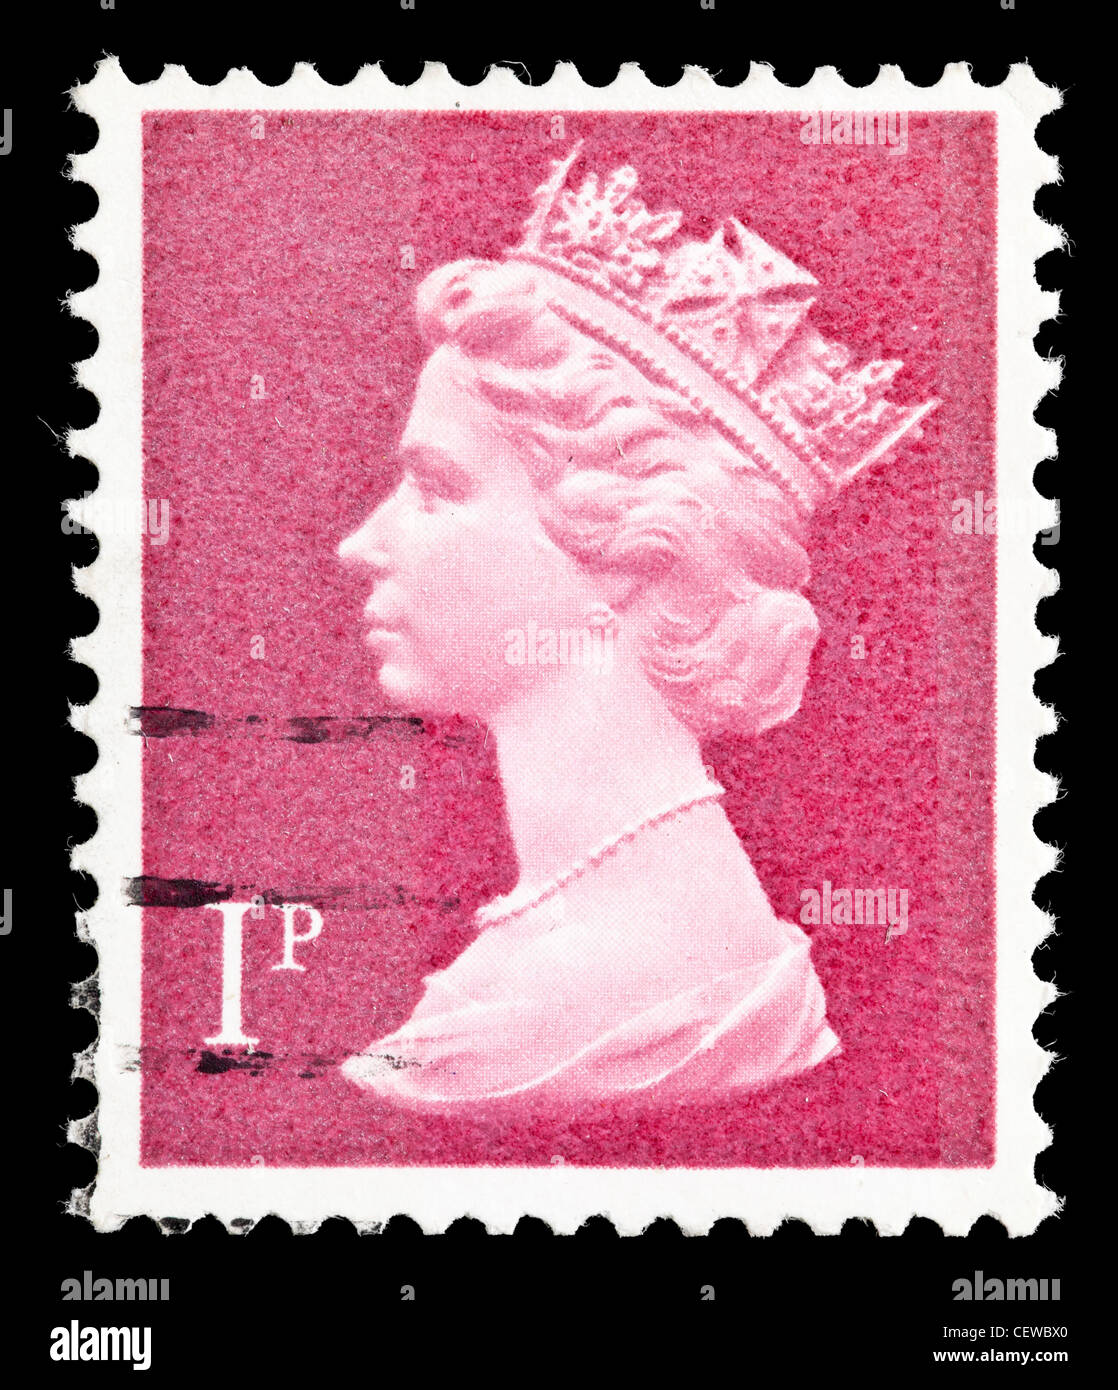 Regno Unito 1 pence francobollo con un ritratto della regina Elisabetta II.; circa 1977 Foto Stock